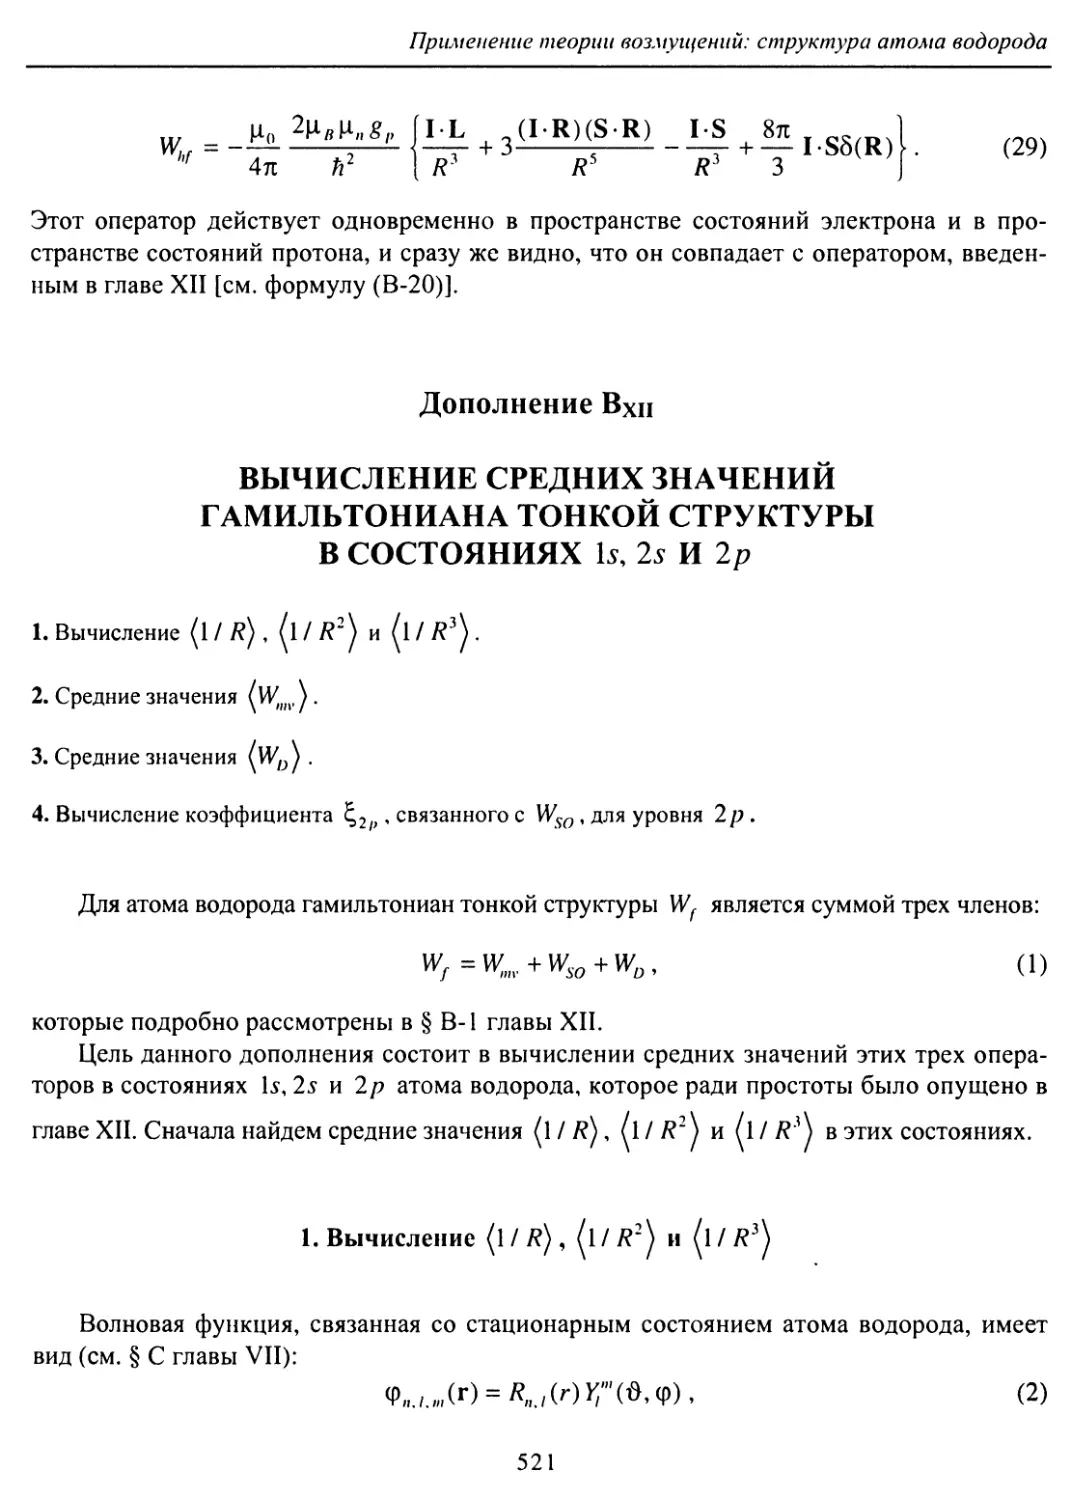 В. Вычисление средних значений гамильтониана тонкой структуры в состояниях 1s, 2s и 2p